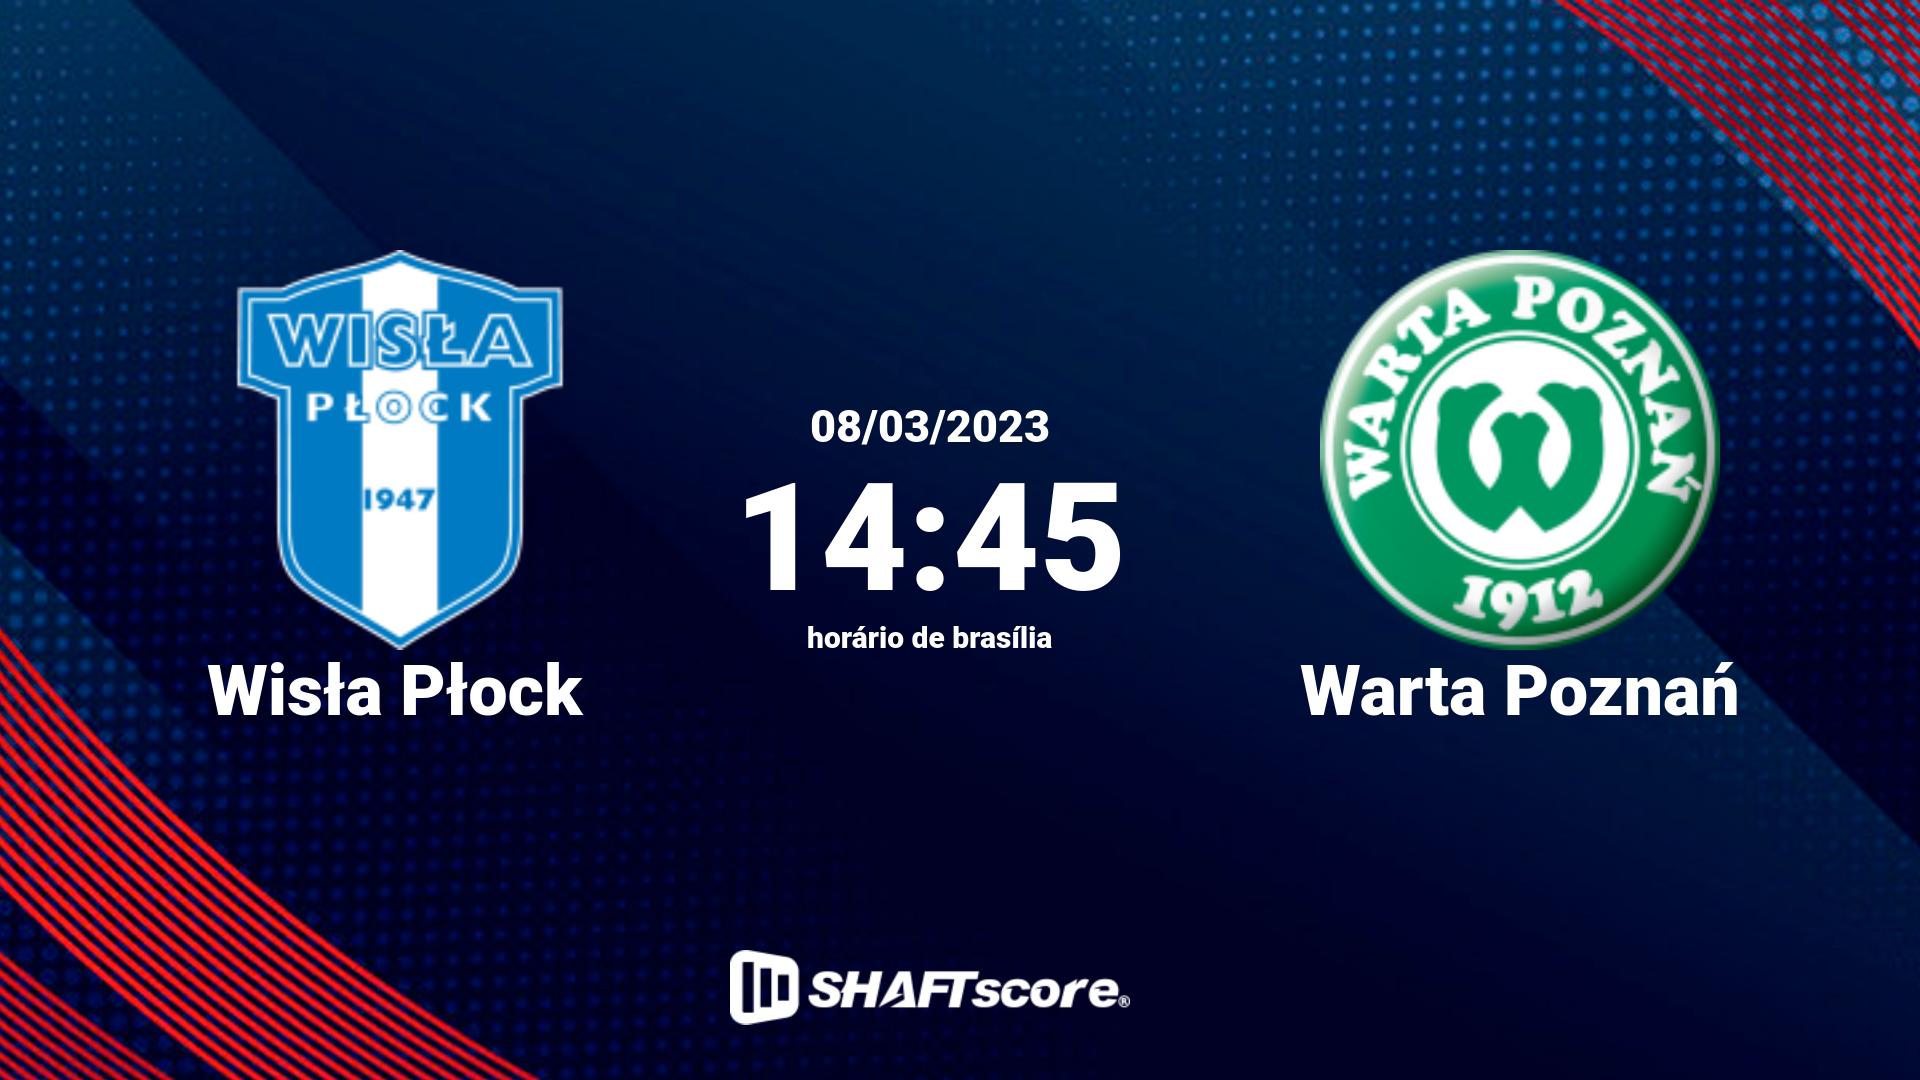 Estatísticas do jogo Wisła Płock vs Warta Poznań 08.03 14:45